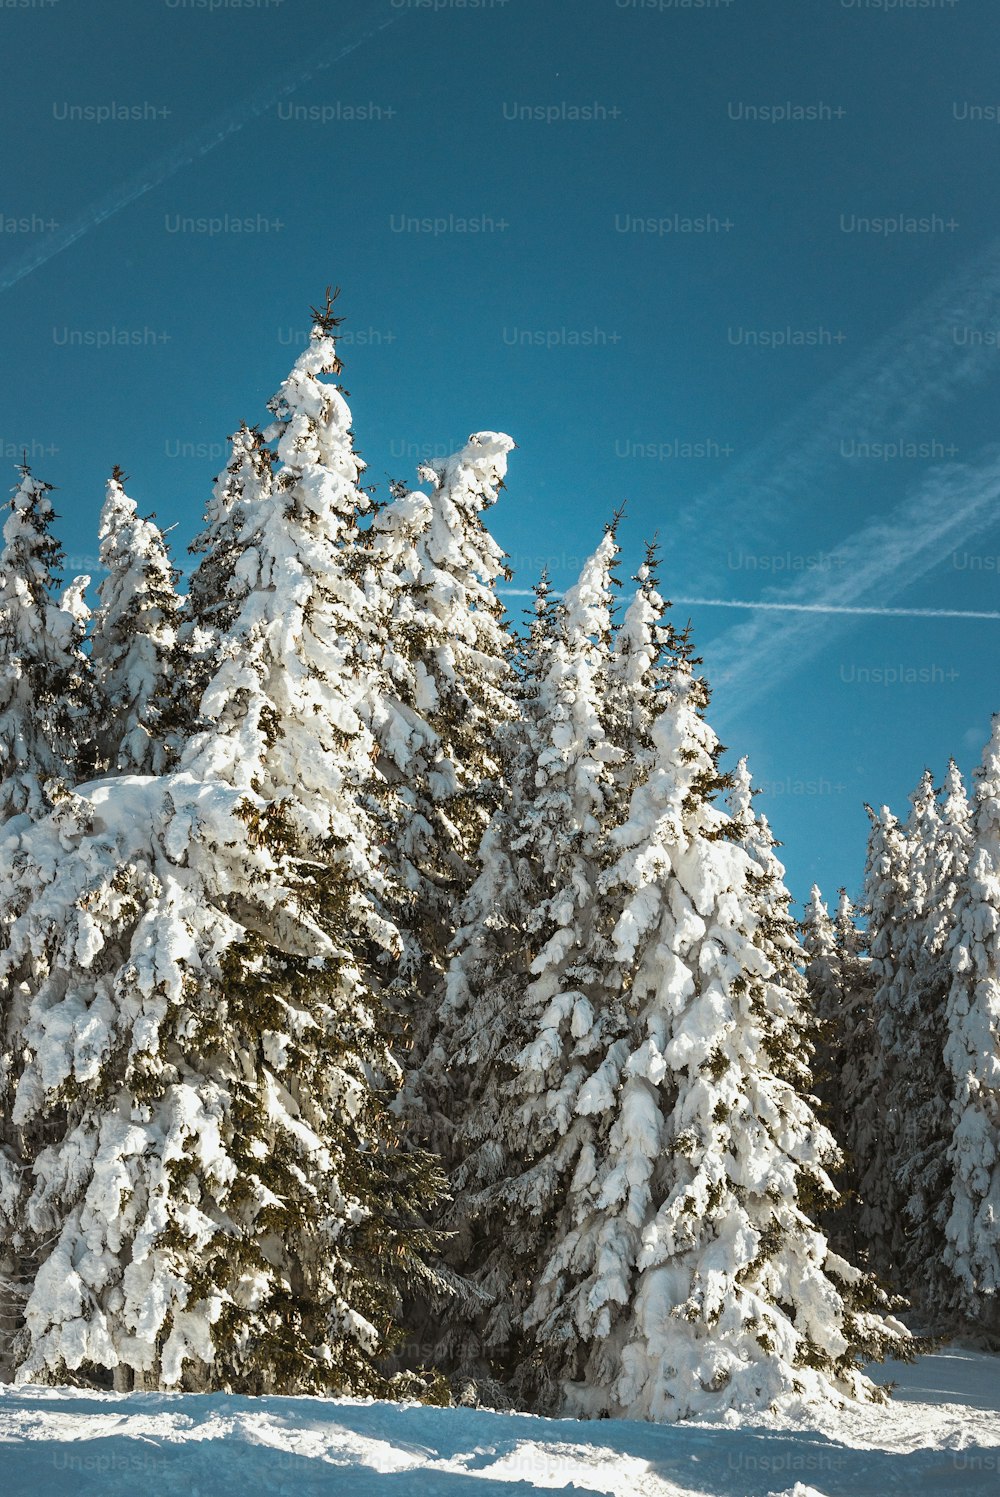 Una persona en esquís en la nieve cerca de algunos árboles